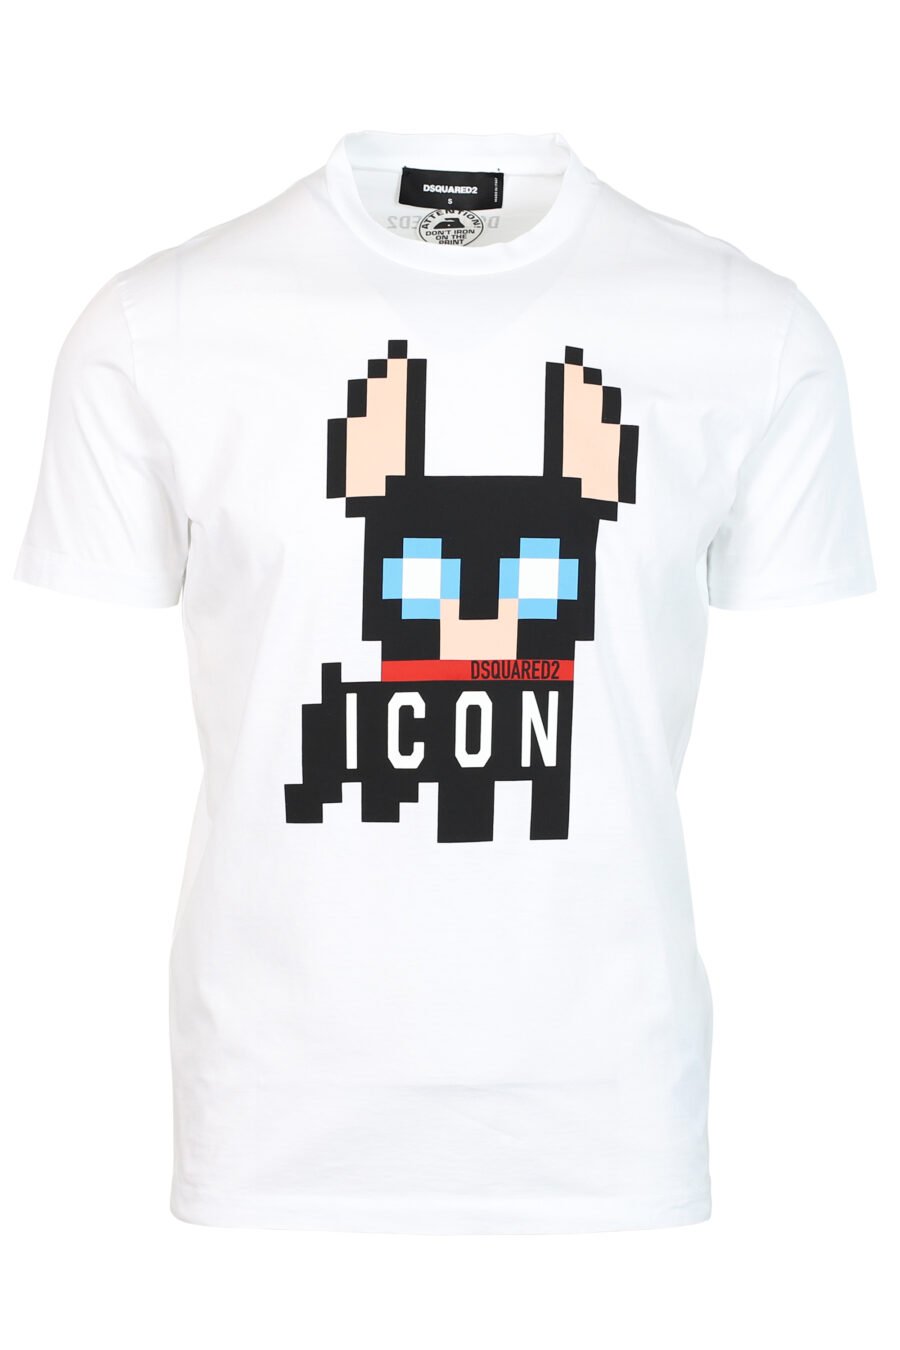 T-shirt branca com maxilogo de cão "Pixeled" - 8052134980705